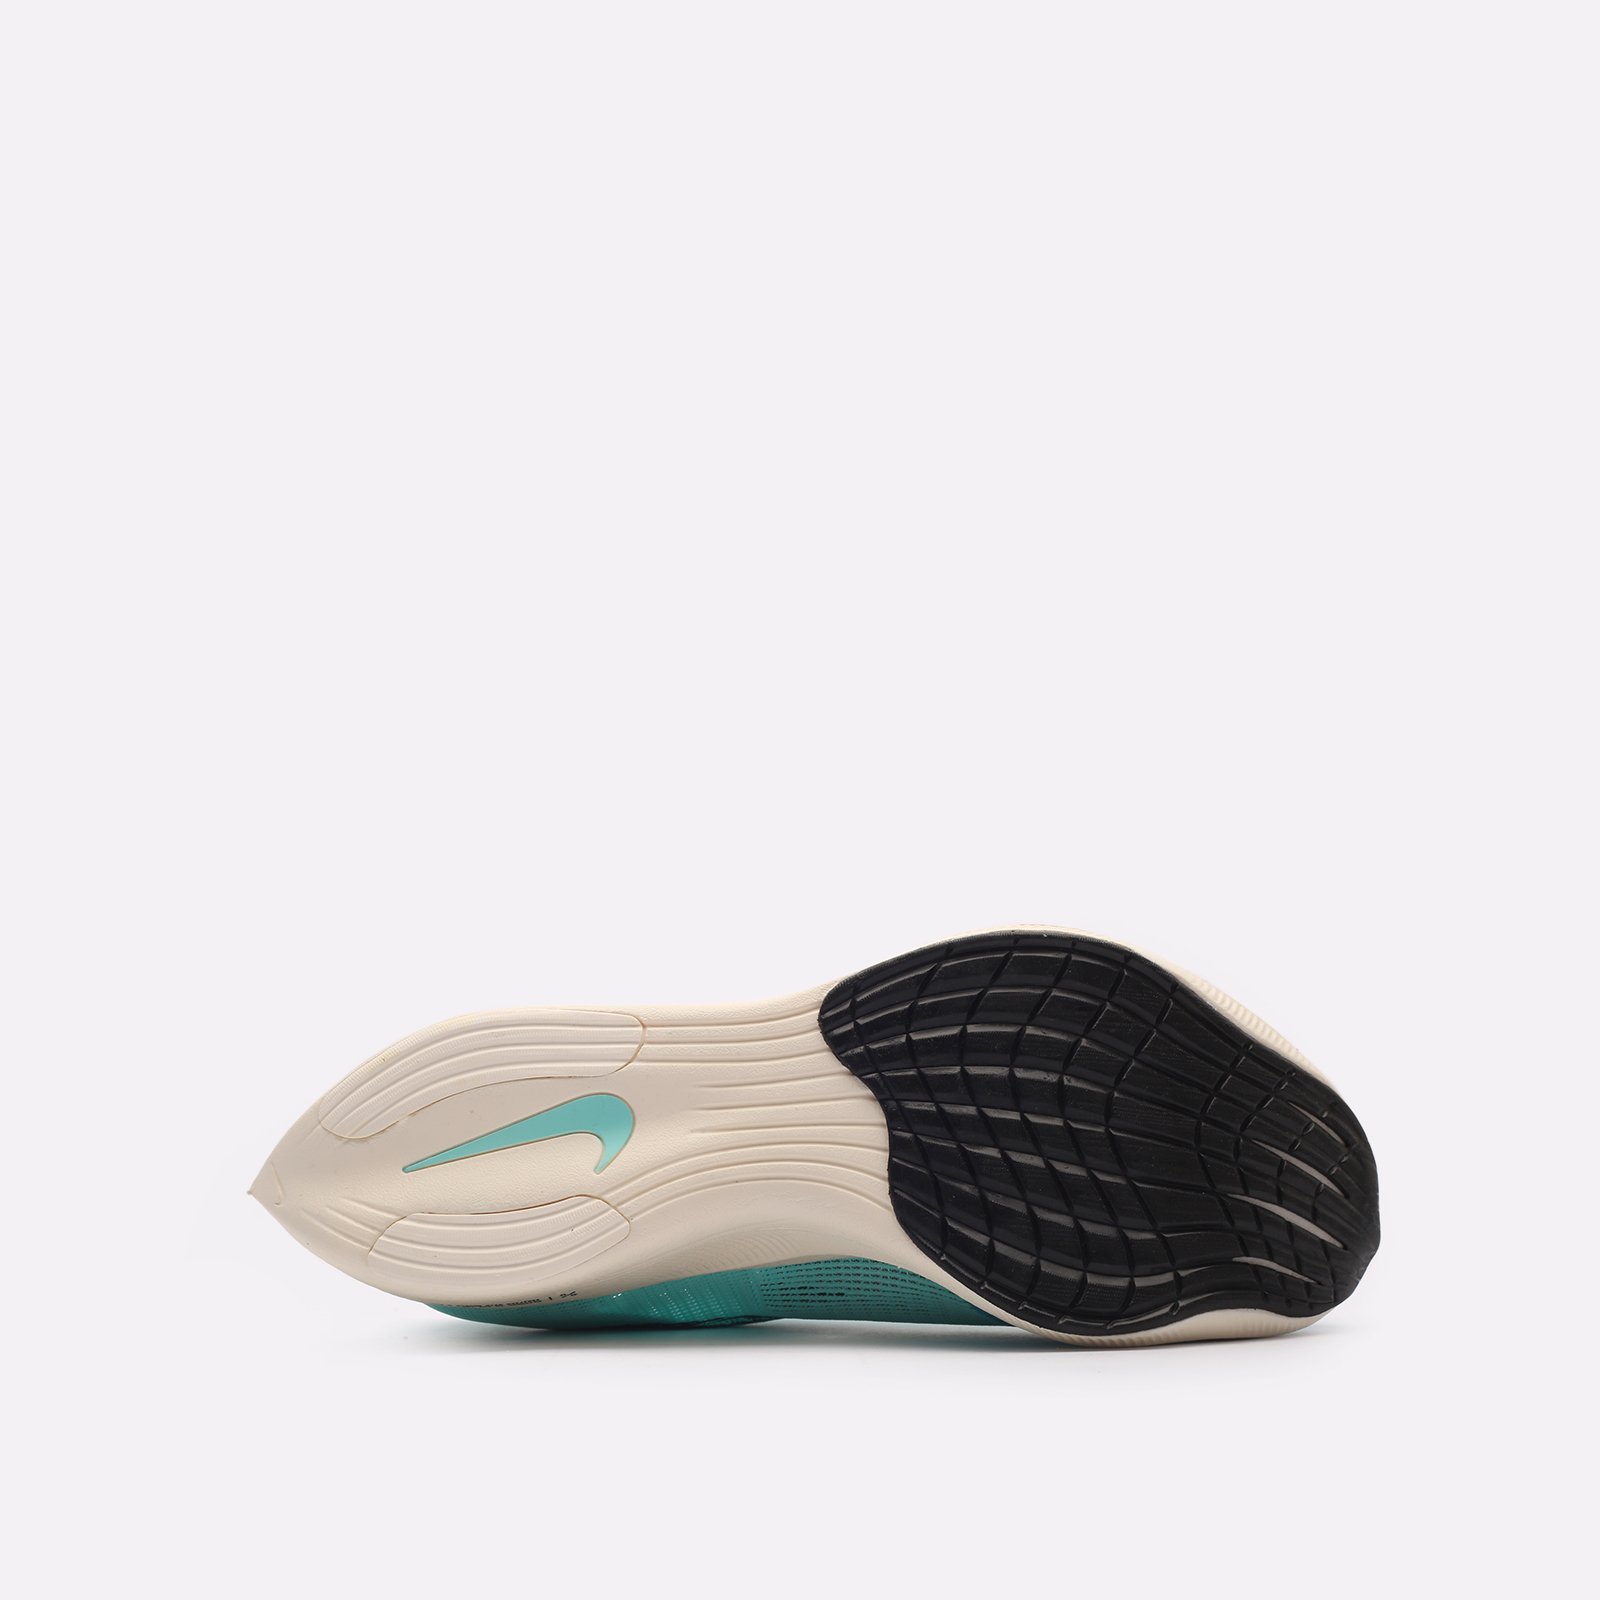 мужские голубые кроссовки Nike ZoomX Vaporfly CU4111-300 - цена, описание, фото 5